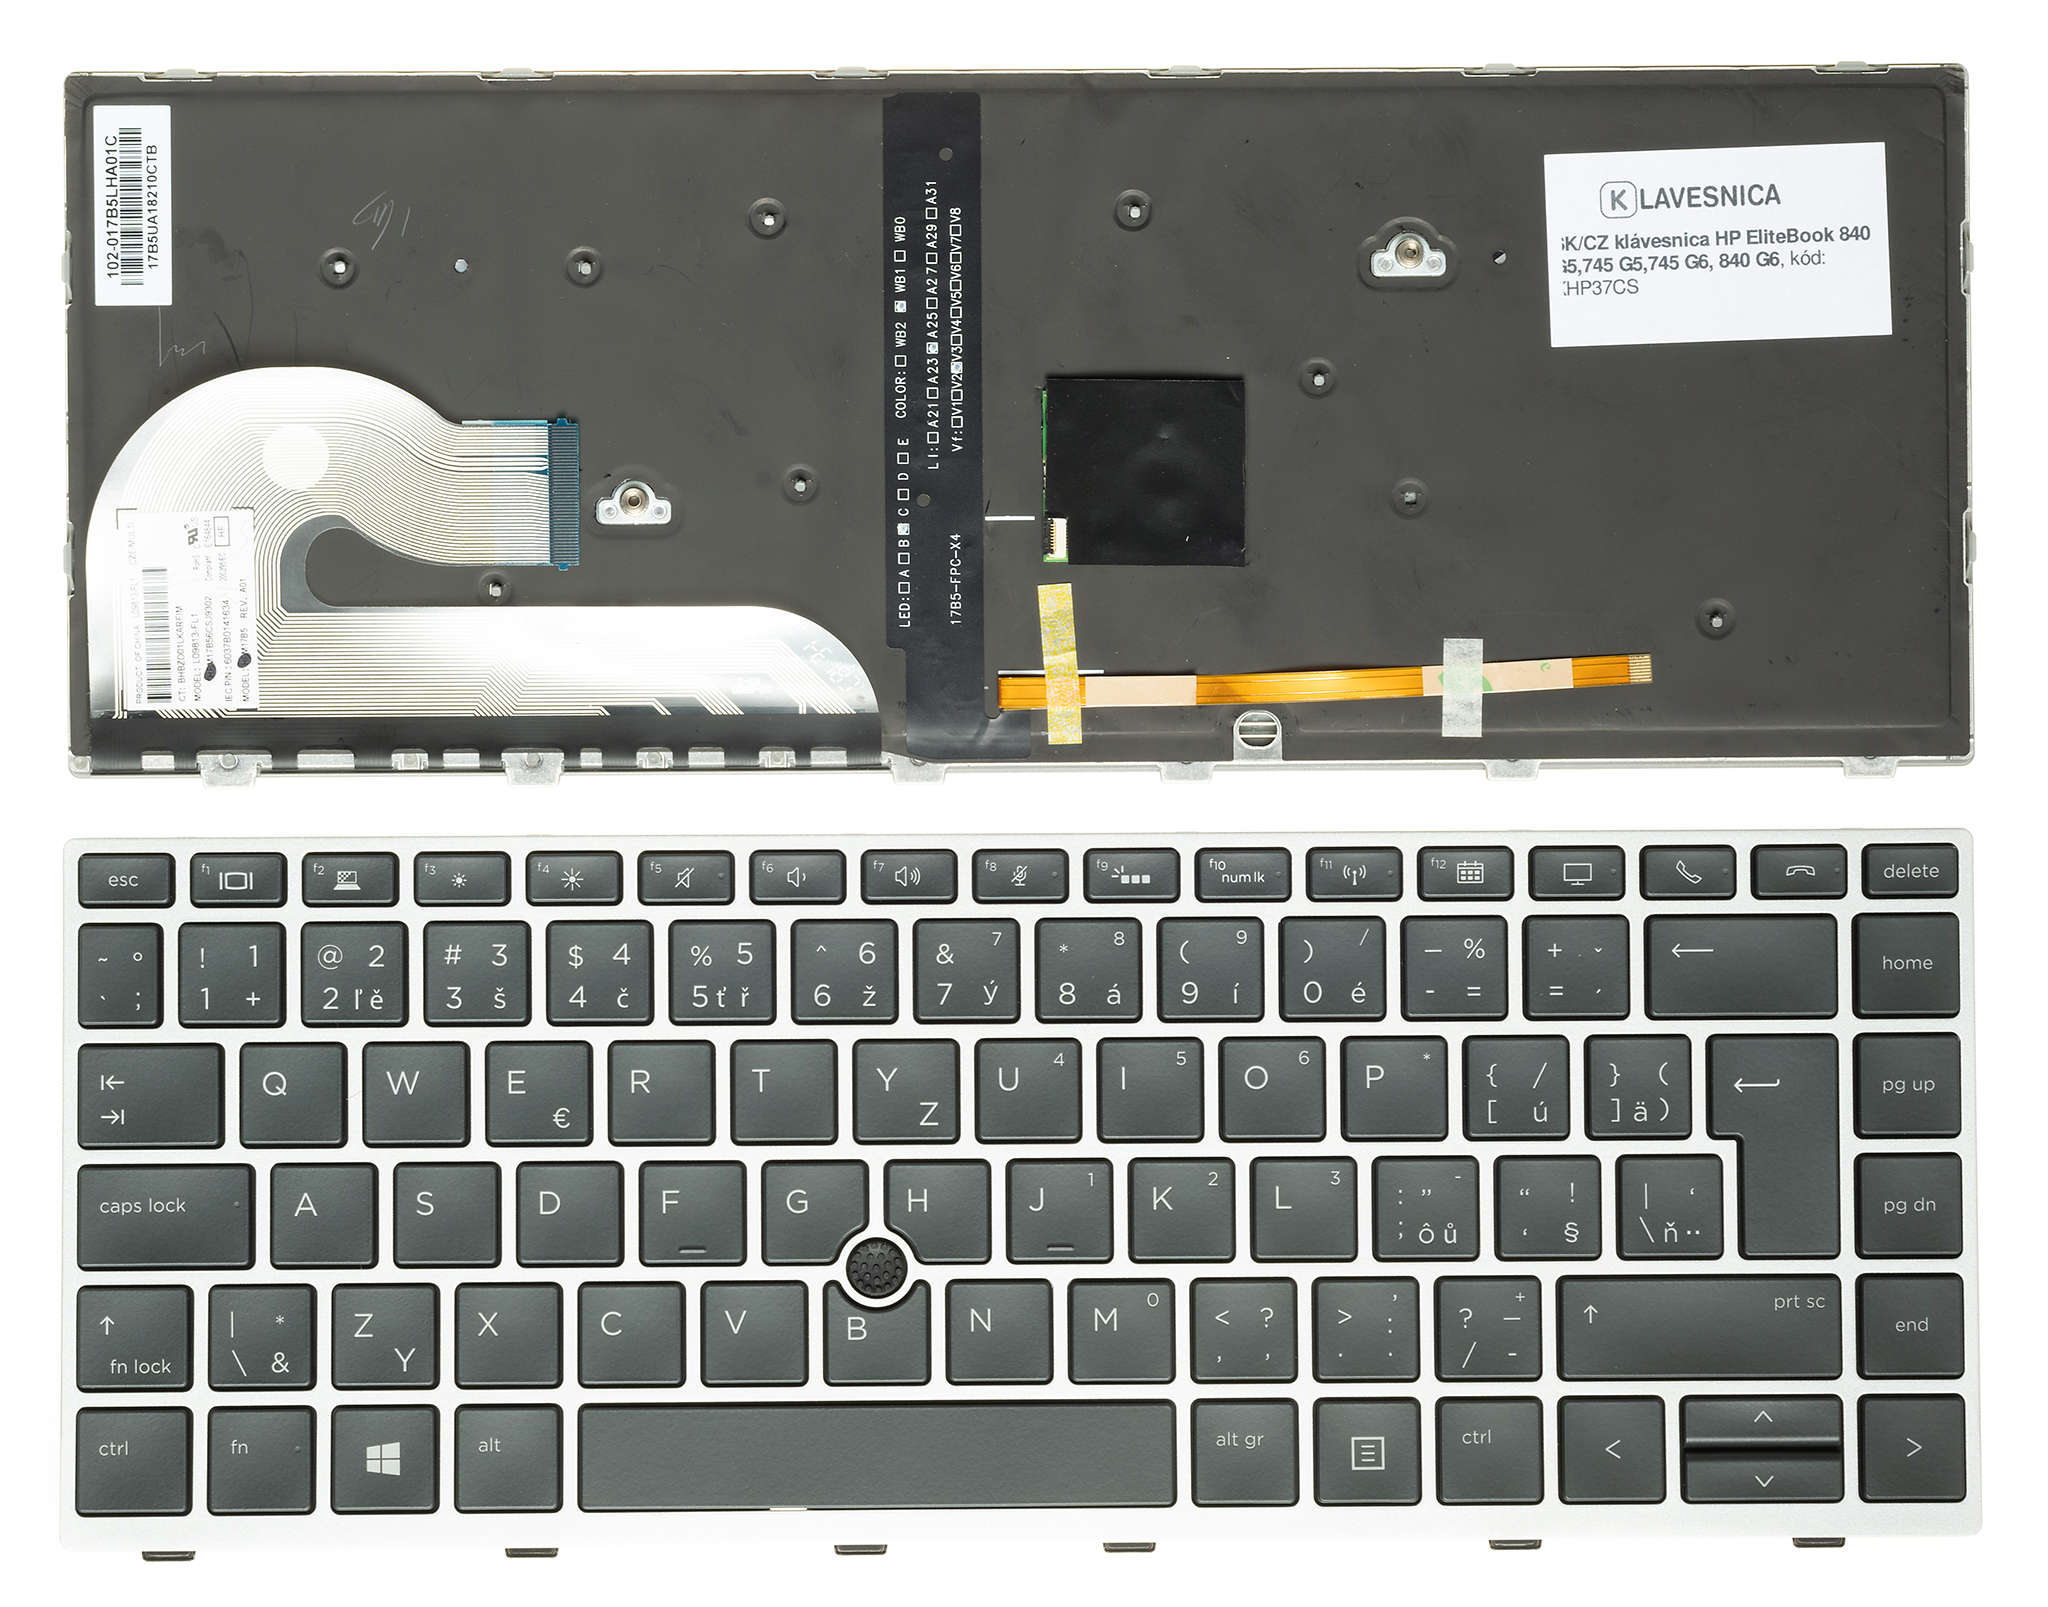 Emeru SK/CZ klávesnica HP EliteBook 840 G5,745 G5,745 G6, 840 G6